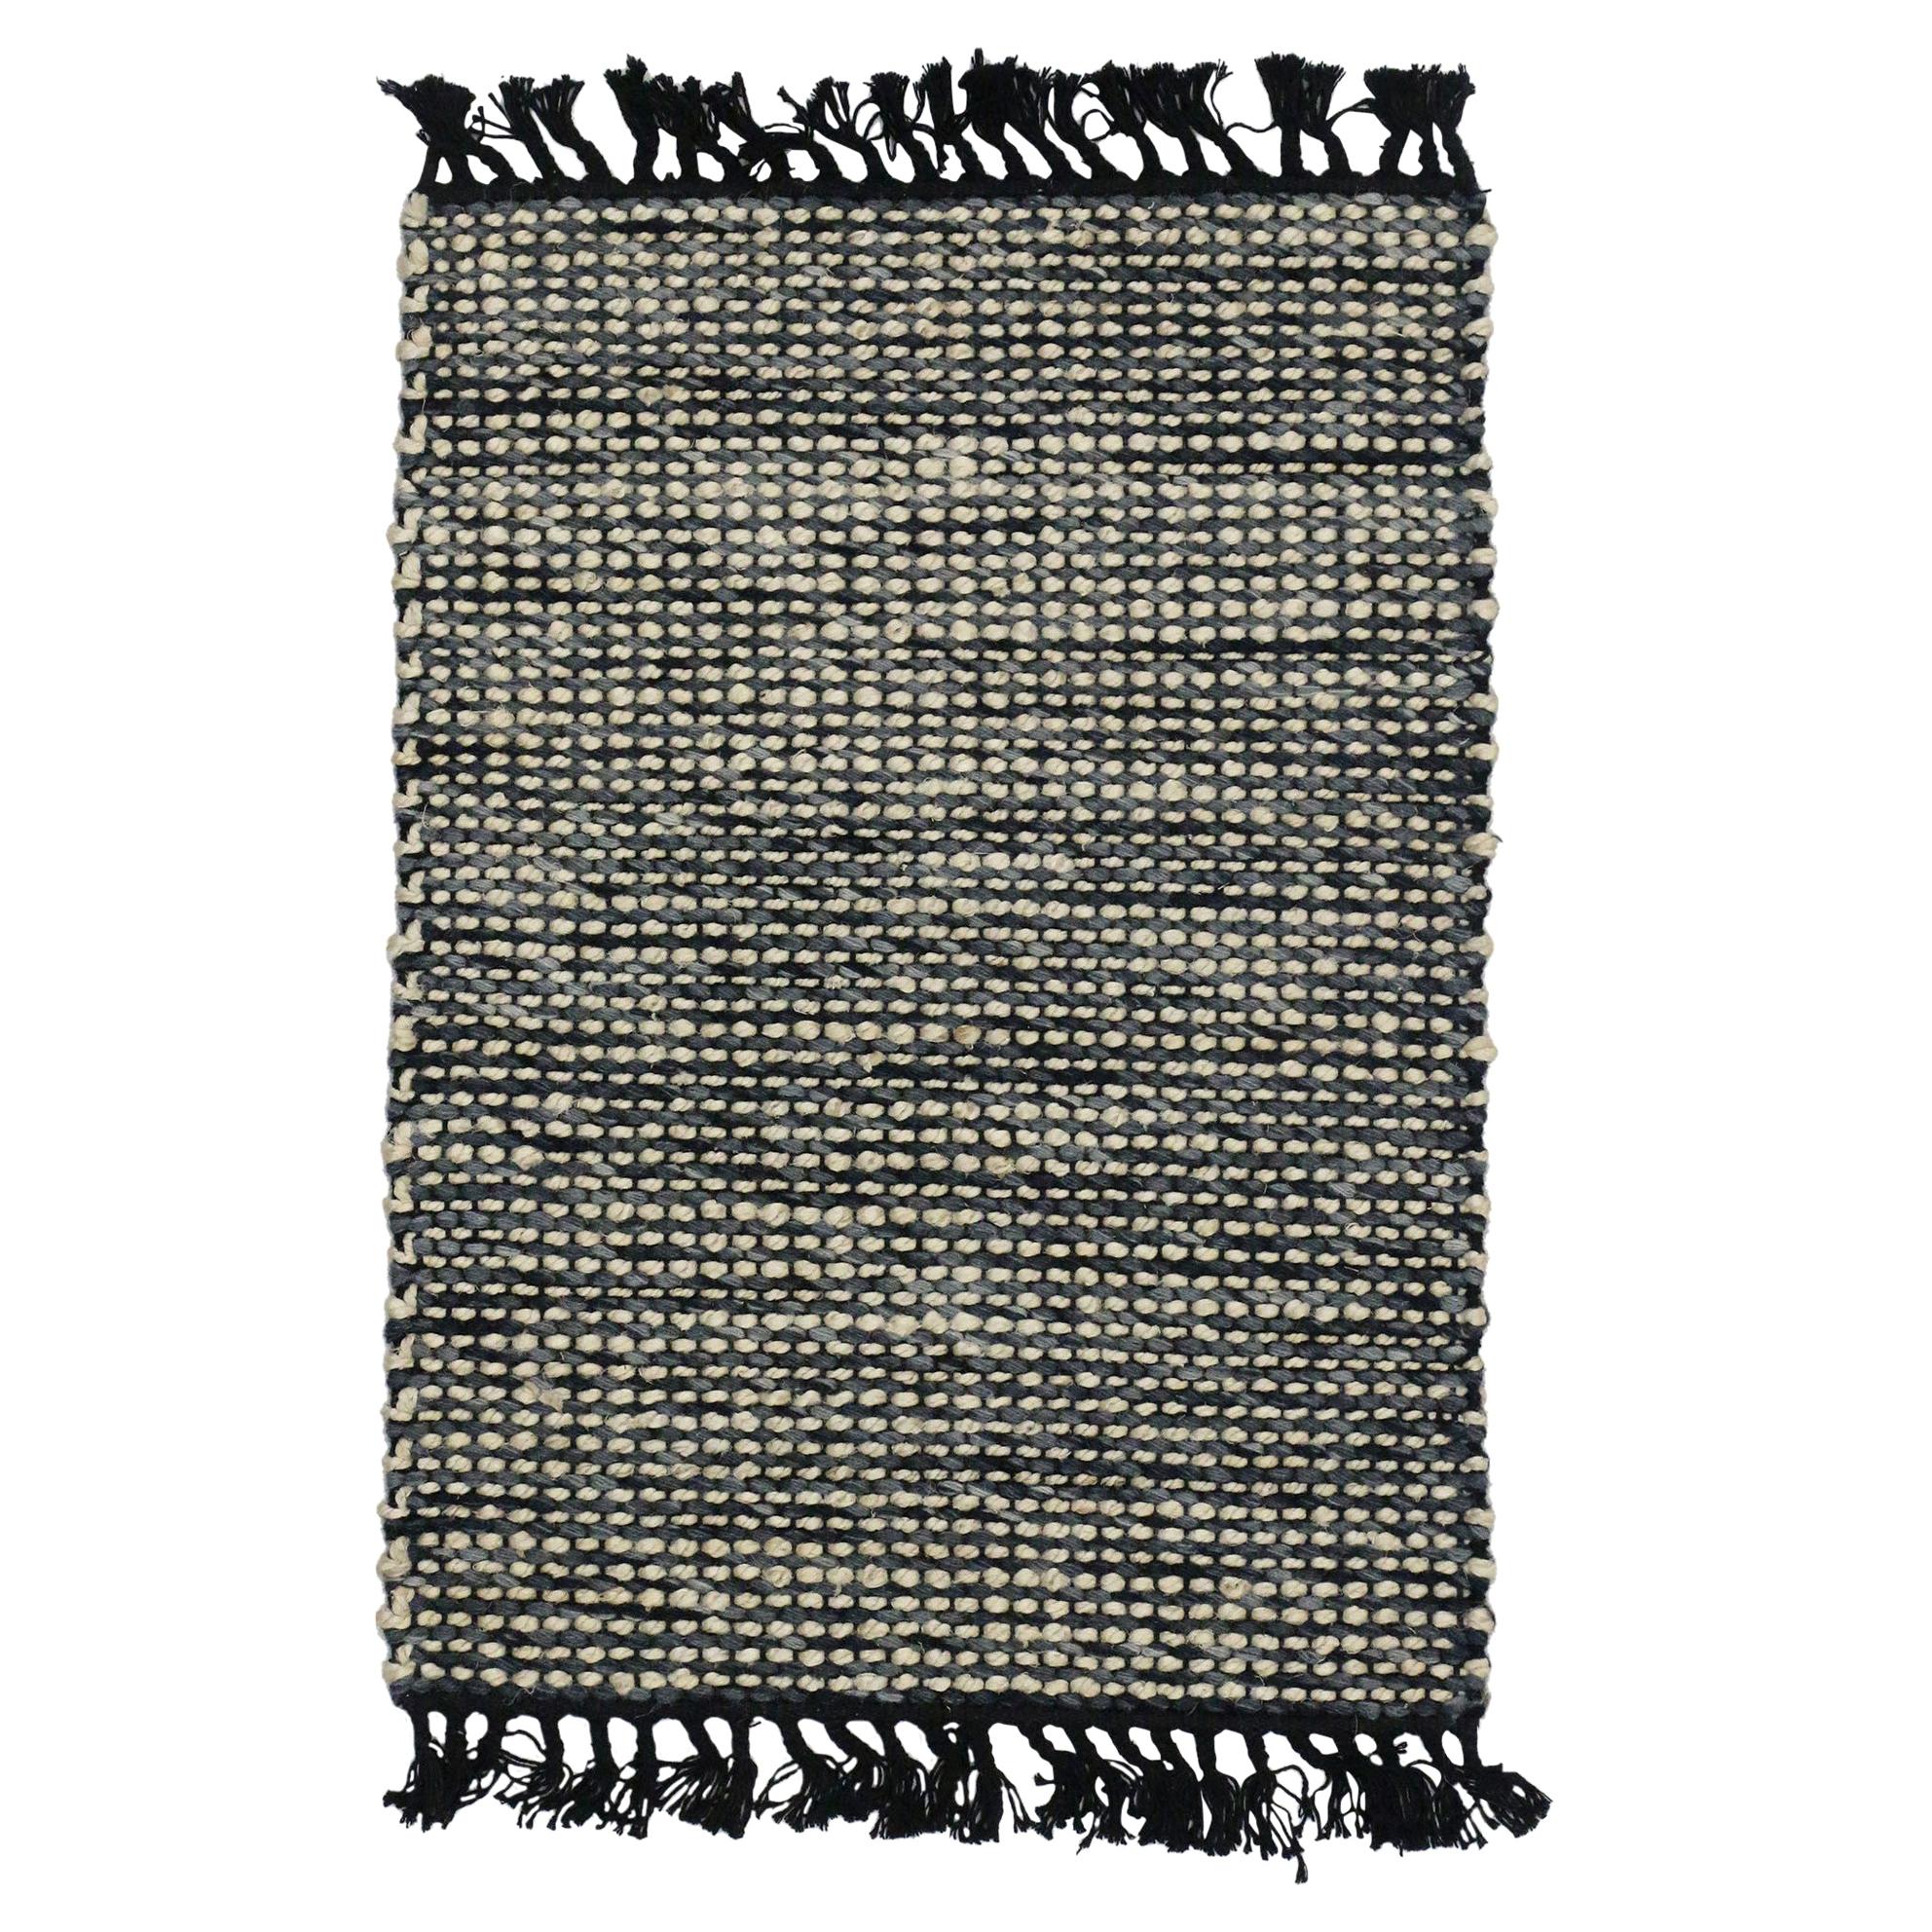 Neuer Flachgewebter Kelim-Teppich aus Dhurrie mit modernem Lake House-Stil, maßgefertigter Flächenteppich